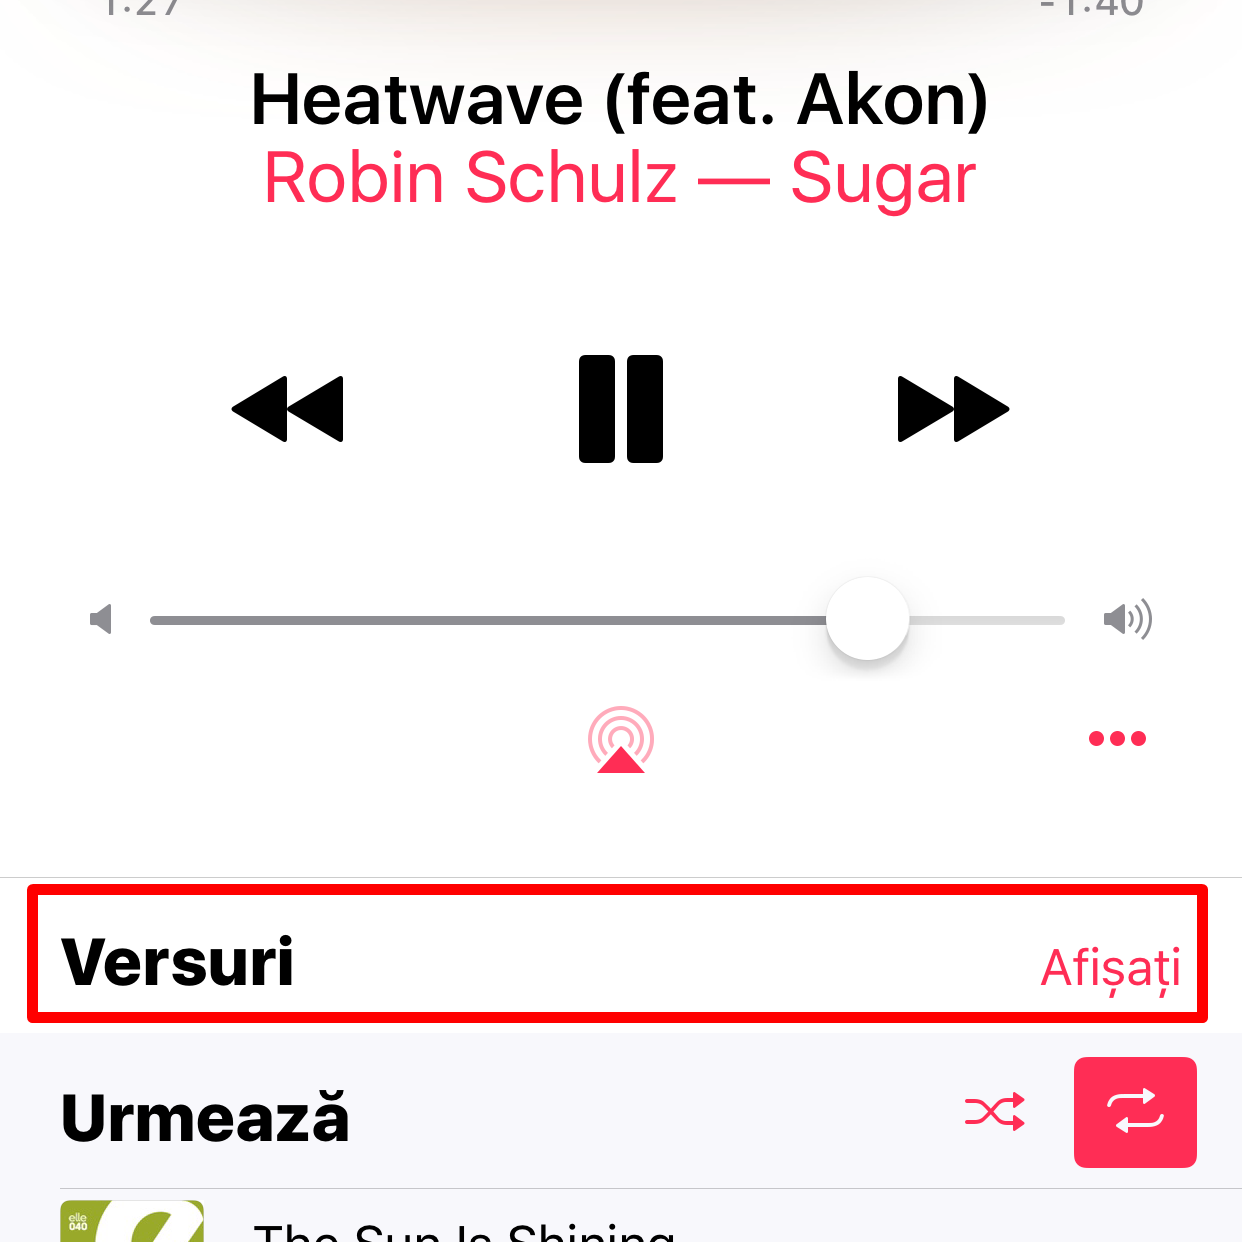 Songtexte iOS 10